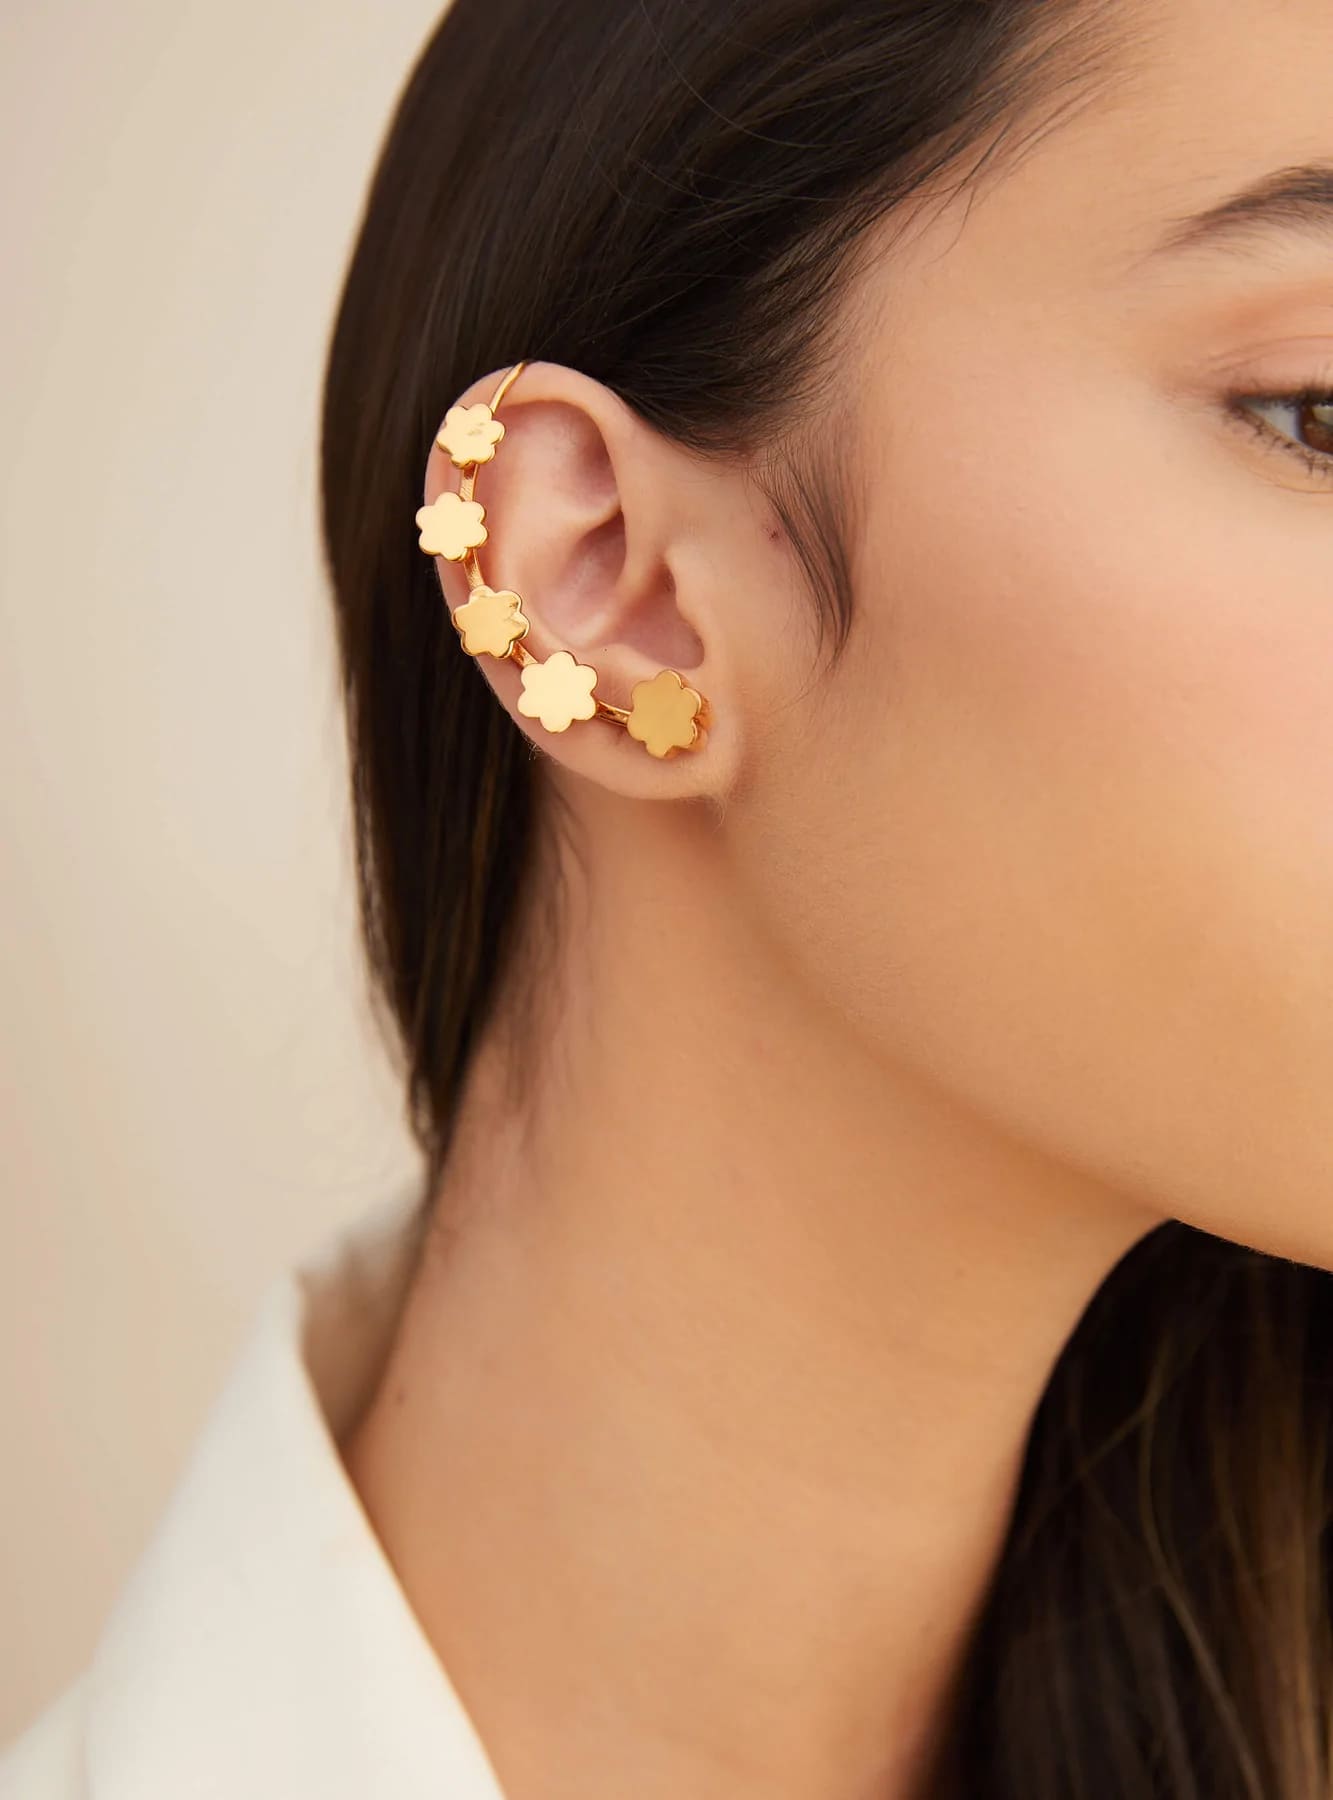 earrings for diamond face shape